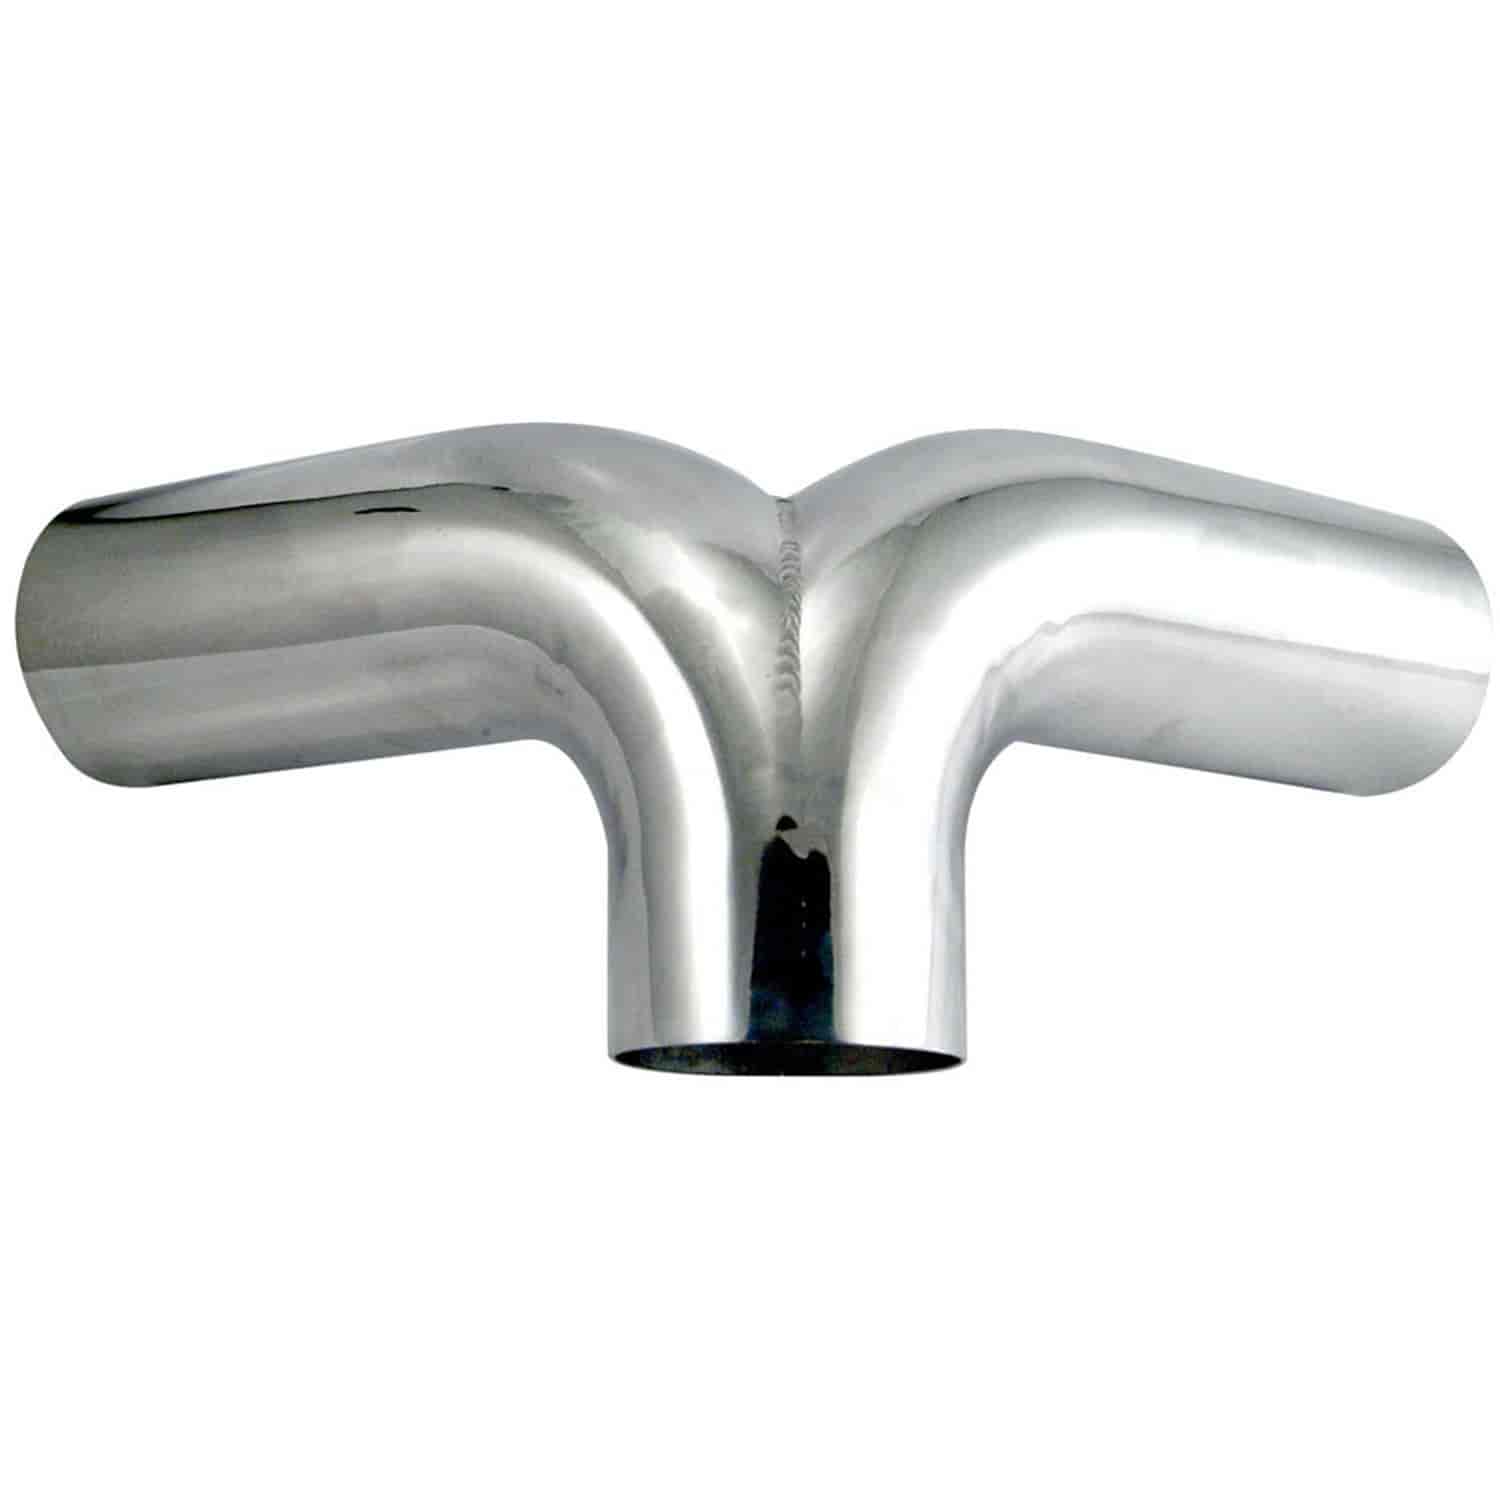 Aluminum Y-Pipe 4" diameter tubing